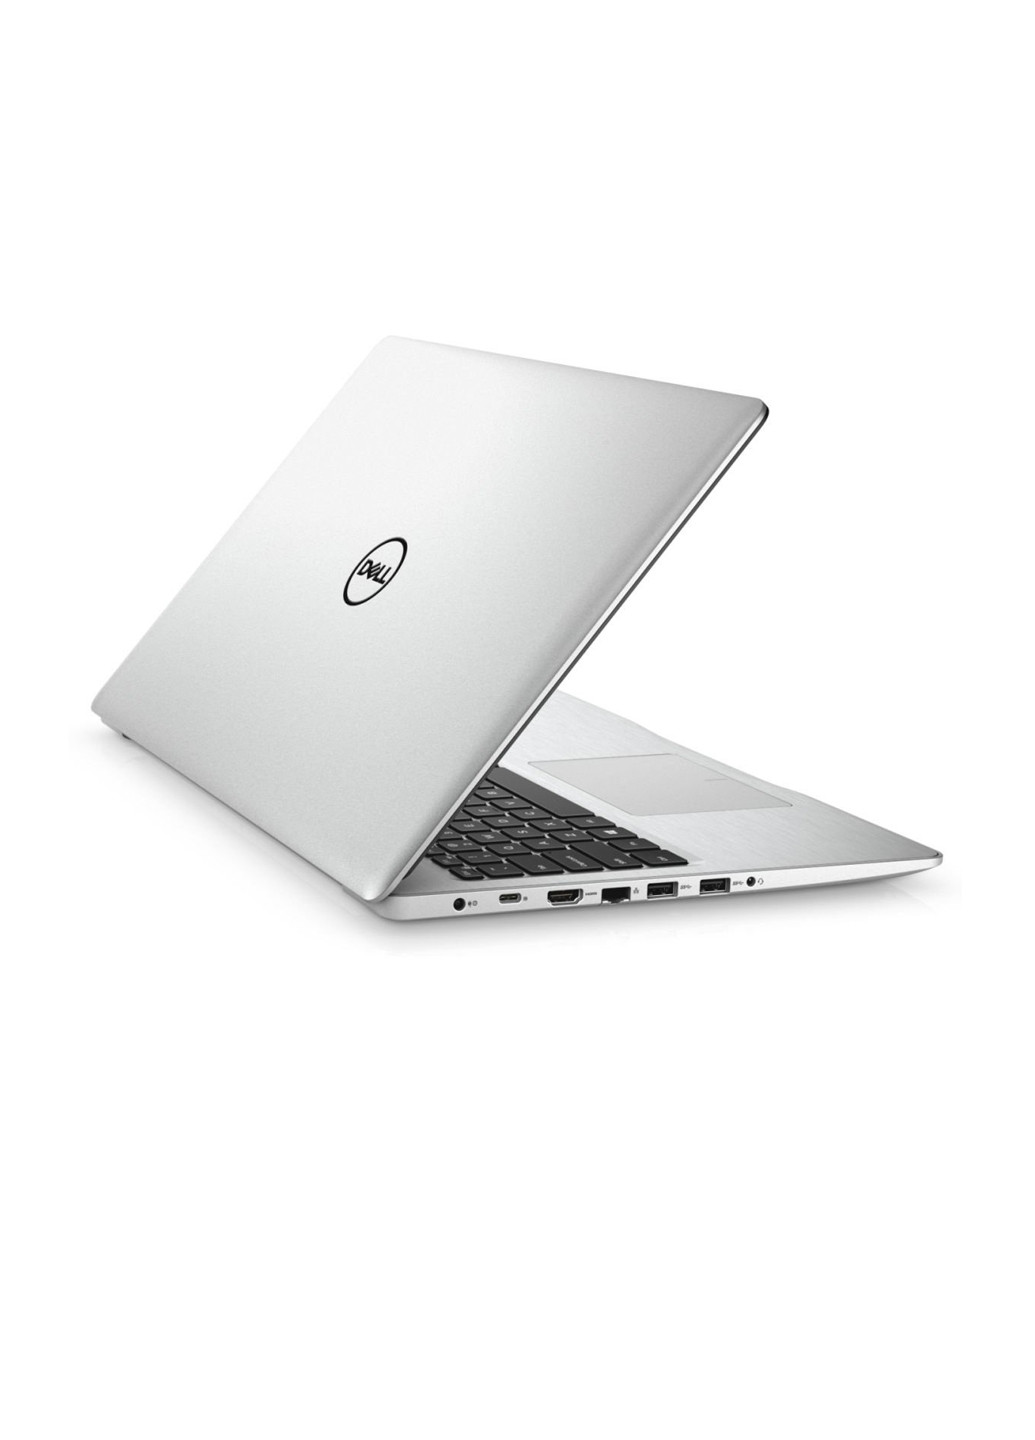 Ноутбук Dell Inspiron 5570 (I553410DDL-80S) Silver сріблястий